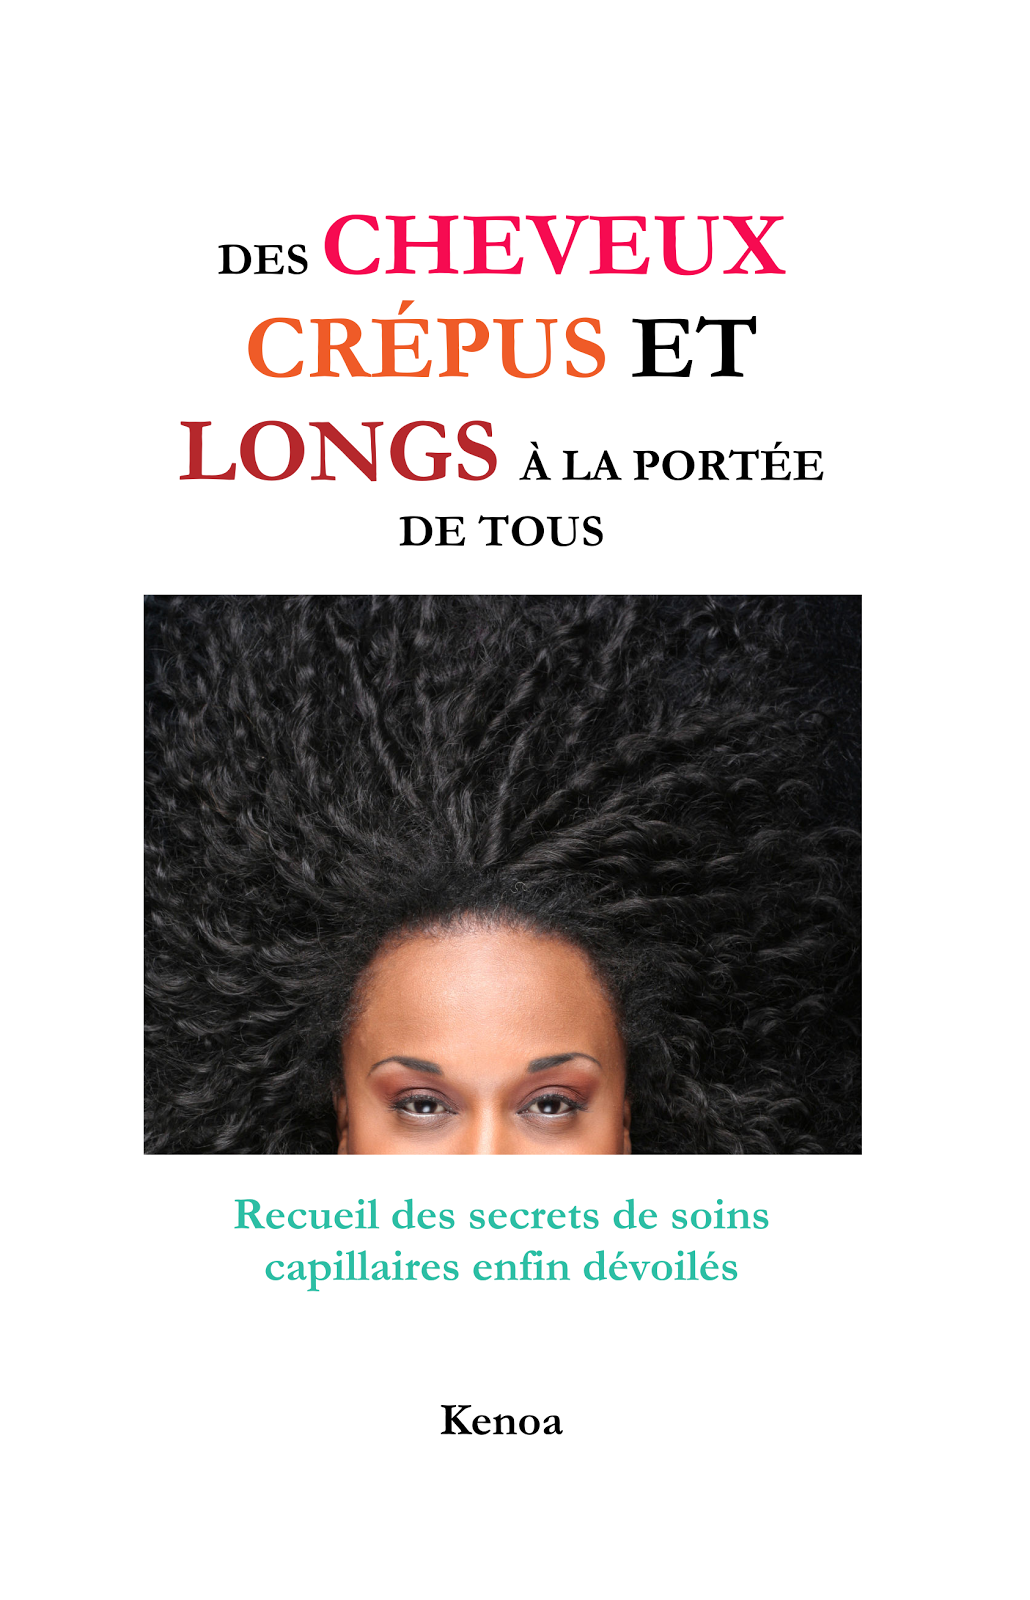 Le livre "Des cheveux crépus et longs à la portée de tous"